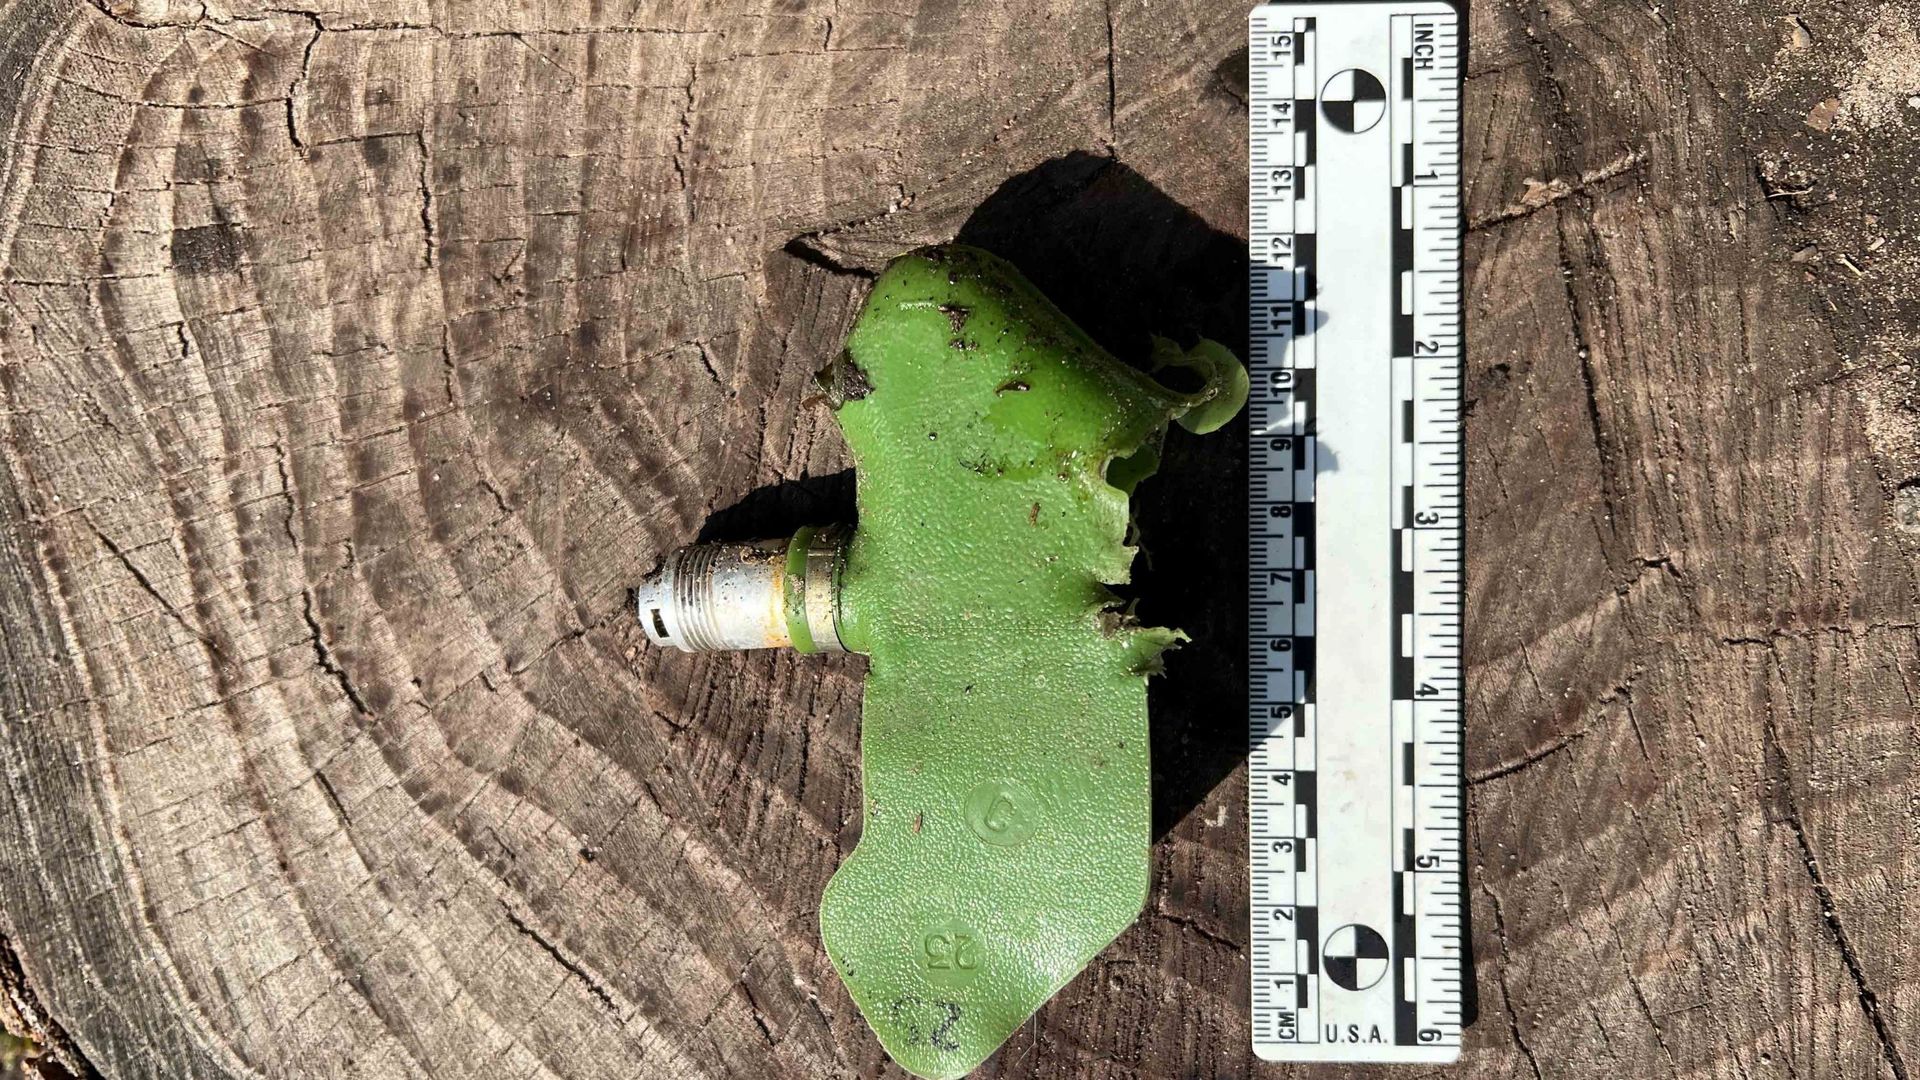 Image Human Rights Watch : Une mine antipersonnel PFM-1S (également appelée mine « papillon » ou mine « pétale ») ayant explosé, retrouvée par Human Rights Watch dans la région d’Izioum, en Ukraine, en septembre 2022.